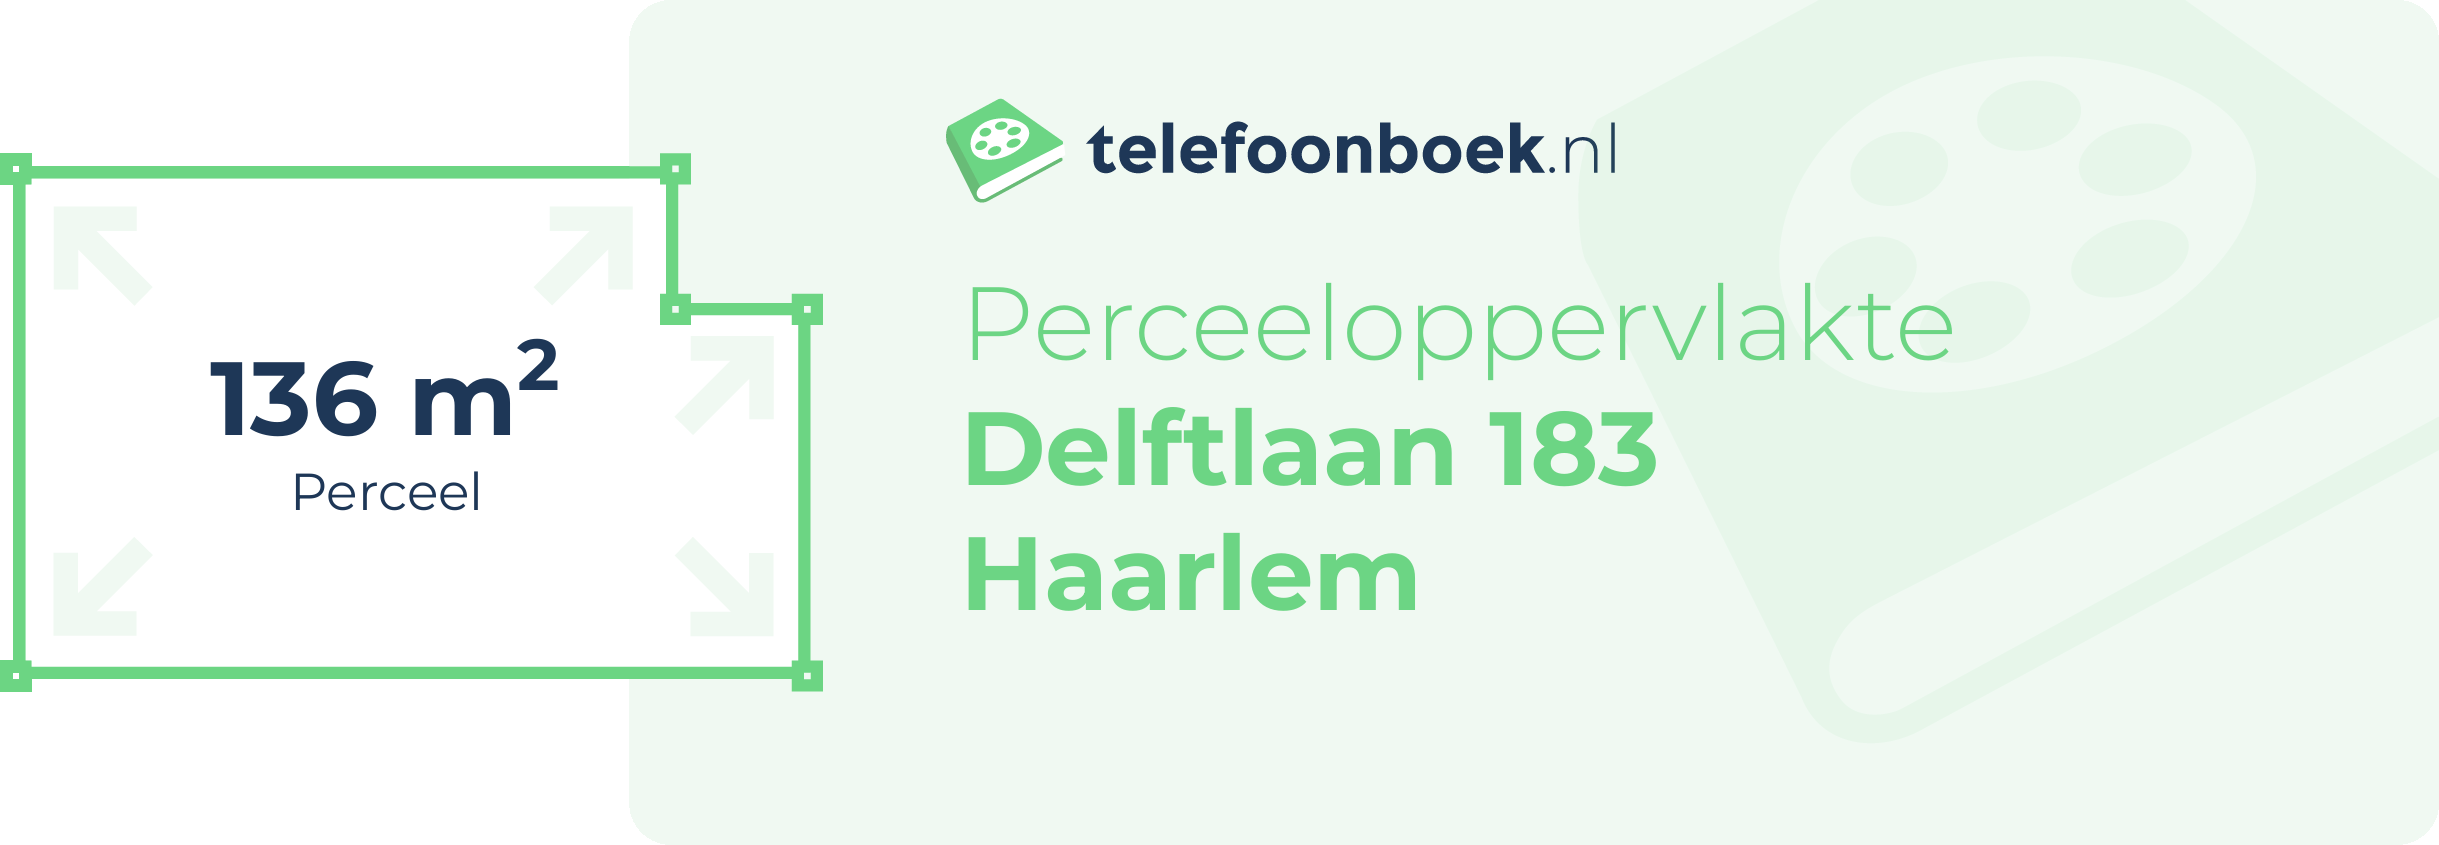 Perceeloppervlakte Delftlaan 183 Haarlem